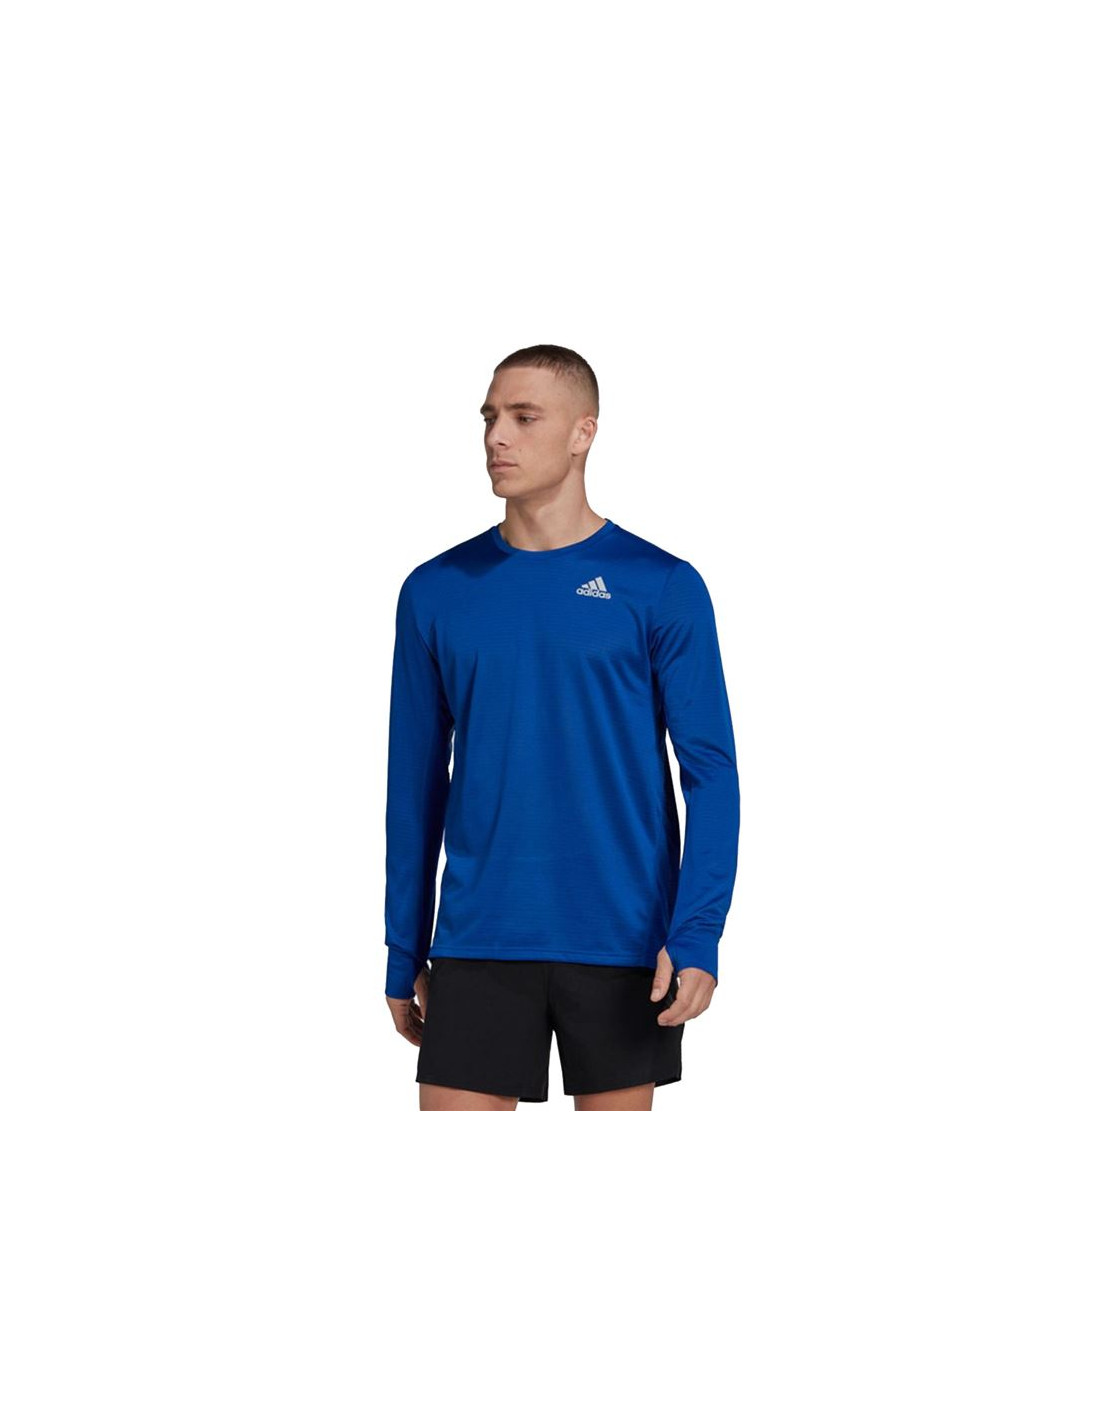 Camiseta de running adidas own the run hombre blue